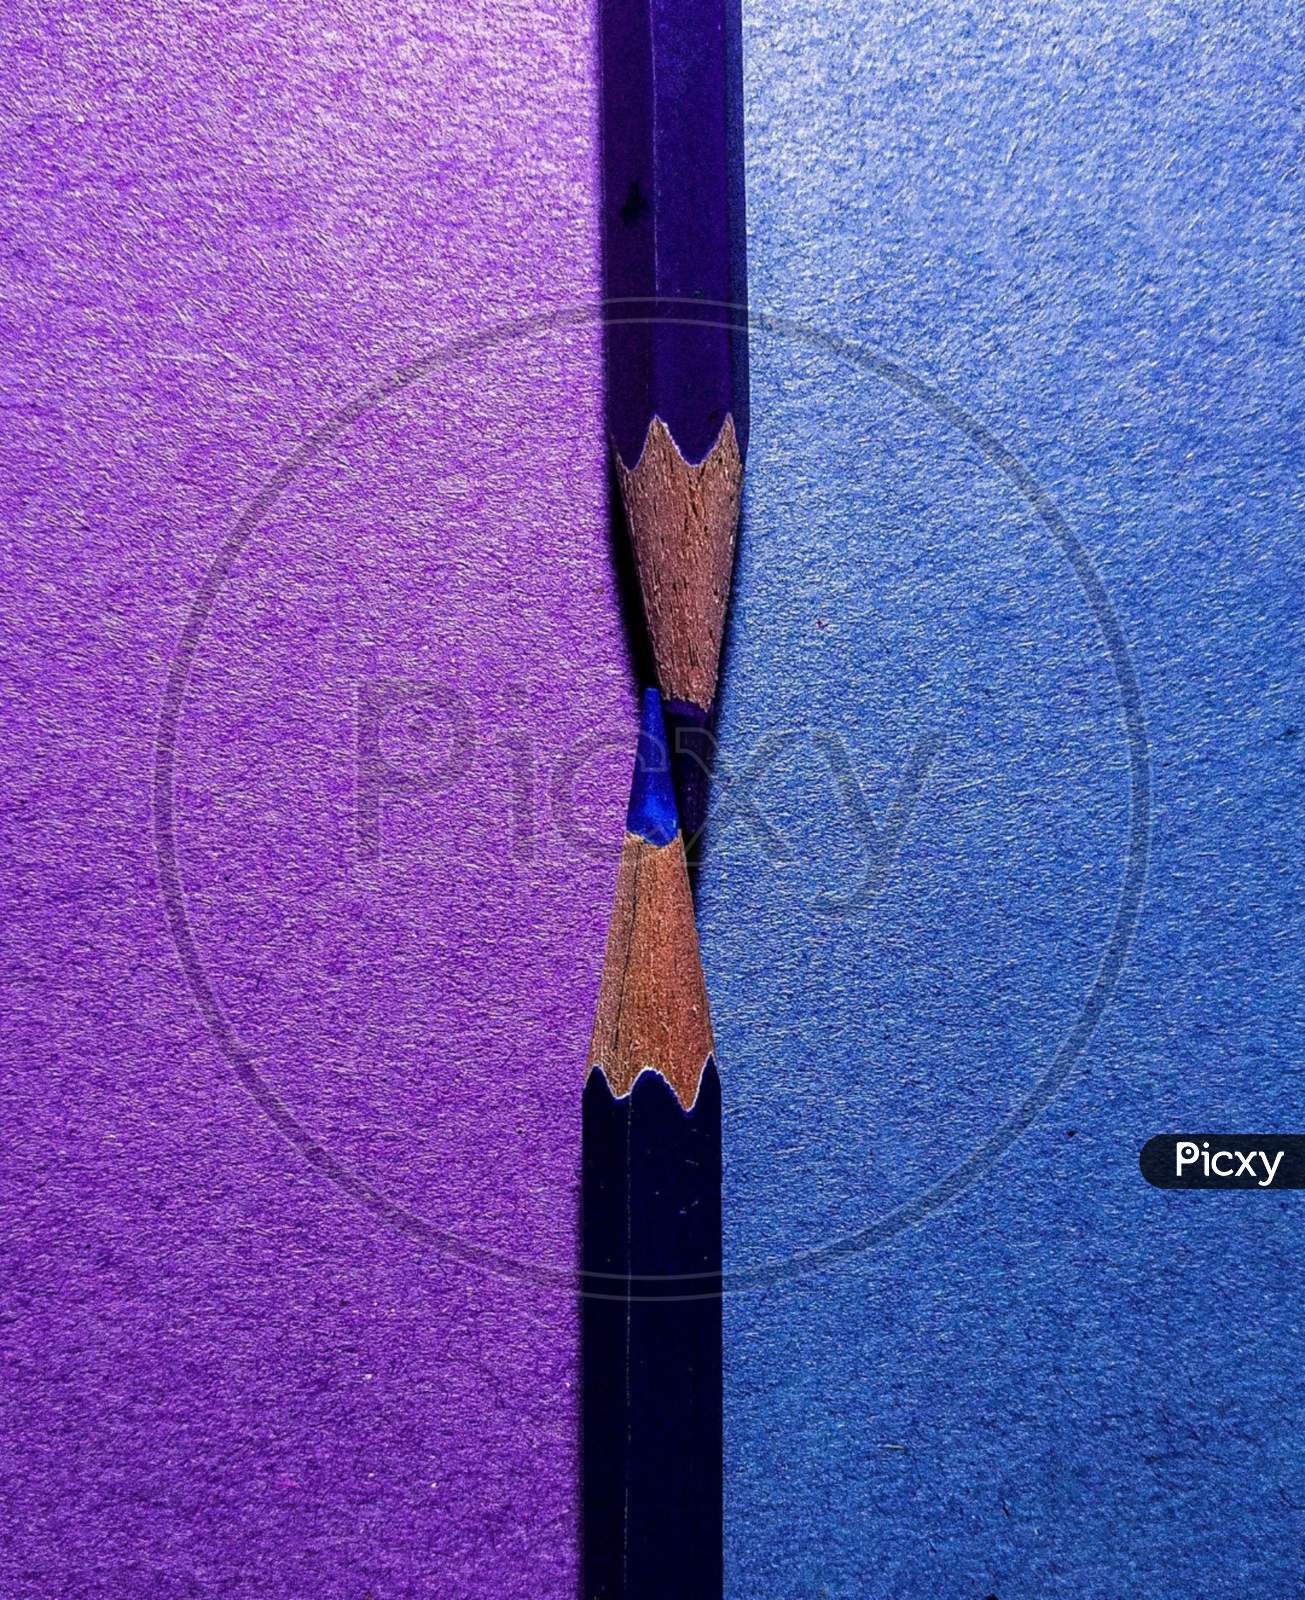 Colour pencils blue and purple background